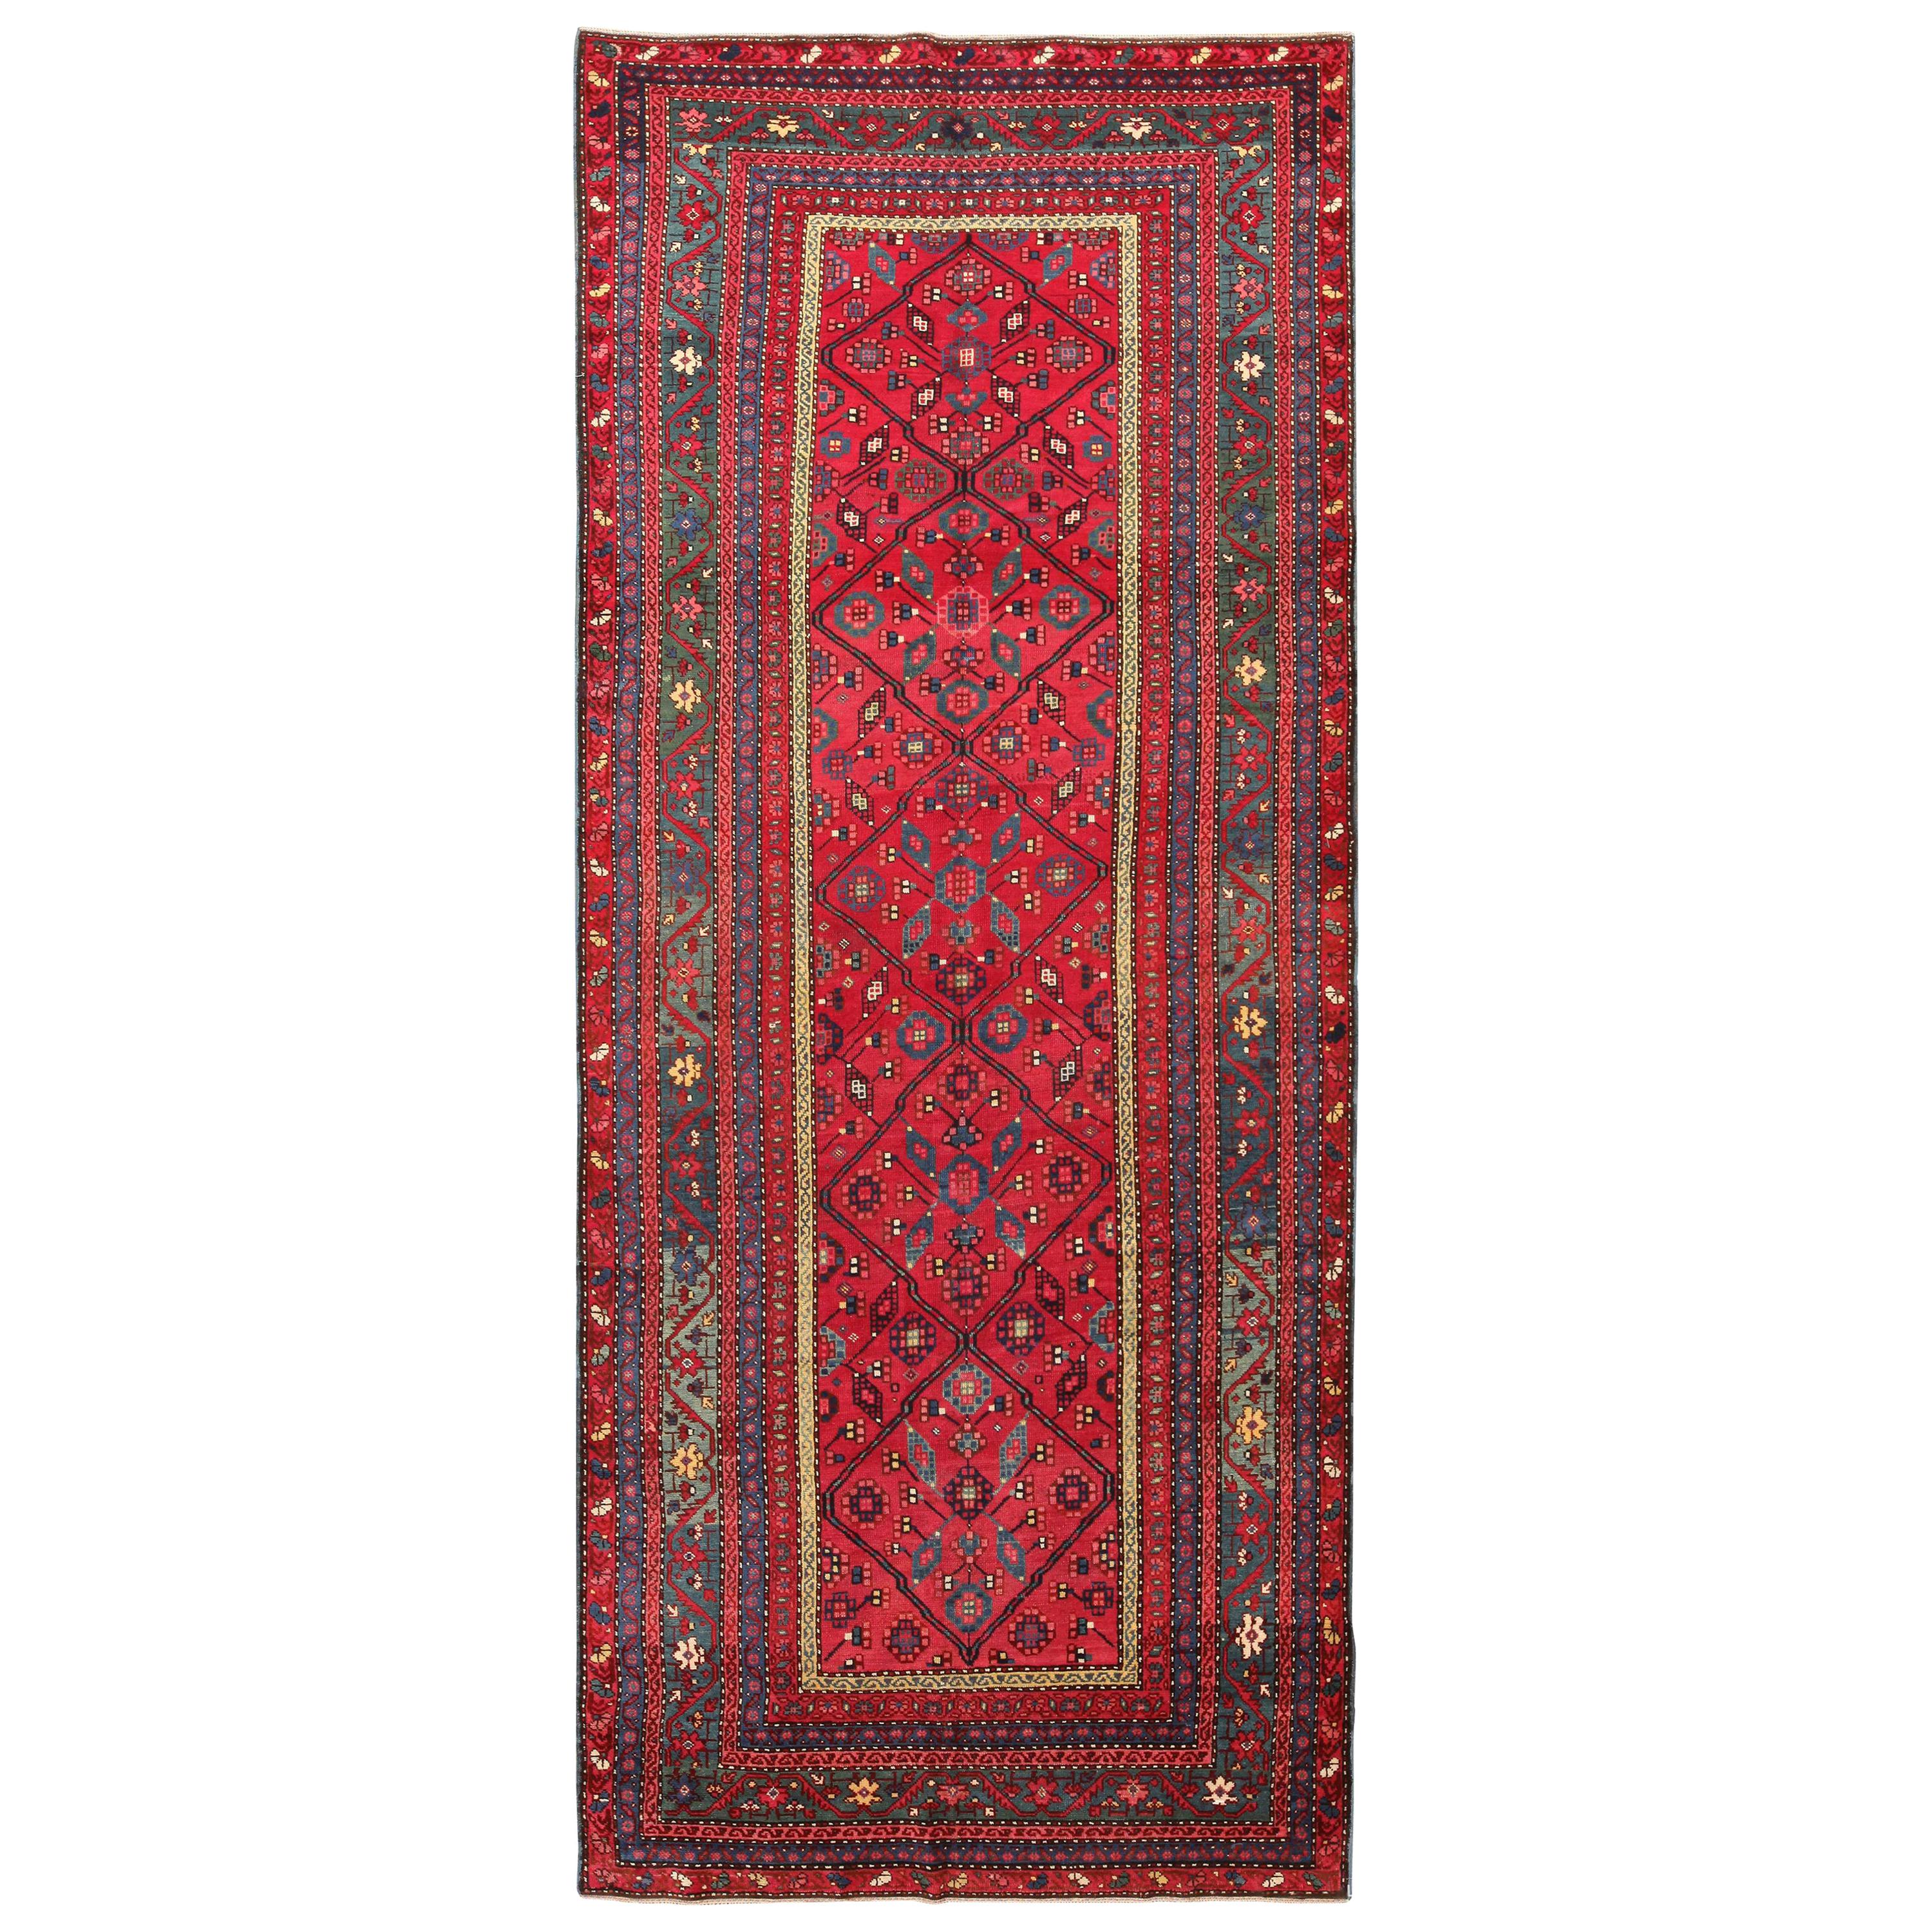 Antique Caucasian Karabagh Rug. Size: 4 ft 8 in x 11 ft